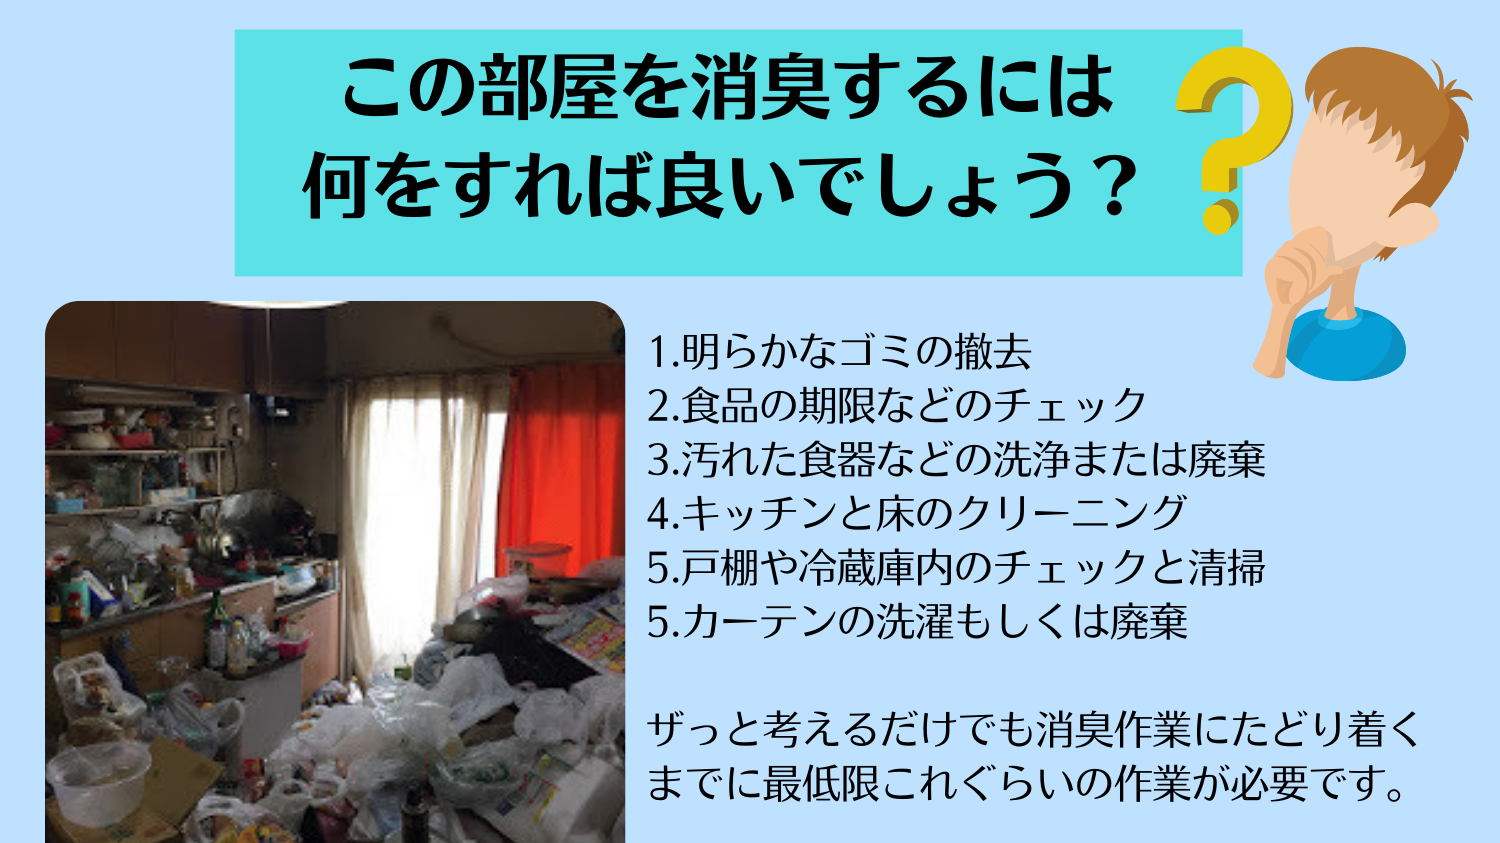 東京都新宿区のマンションでゴミ部屋の消臭を依頼されましたがゴミ部屋のままでは消臭ができません。いわばウンコに消臭剤を振りかけ臭いよ消えろと念じてるようなものです。すなわちゴミ部屋(屋敷)の場合だとゴミを取り除く、ハウスクリーニングをするという工程が絶対に必要なのです。つまり消臭とは清掃と除菌がセットではじめて実現できるのです。